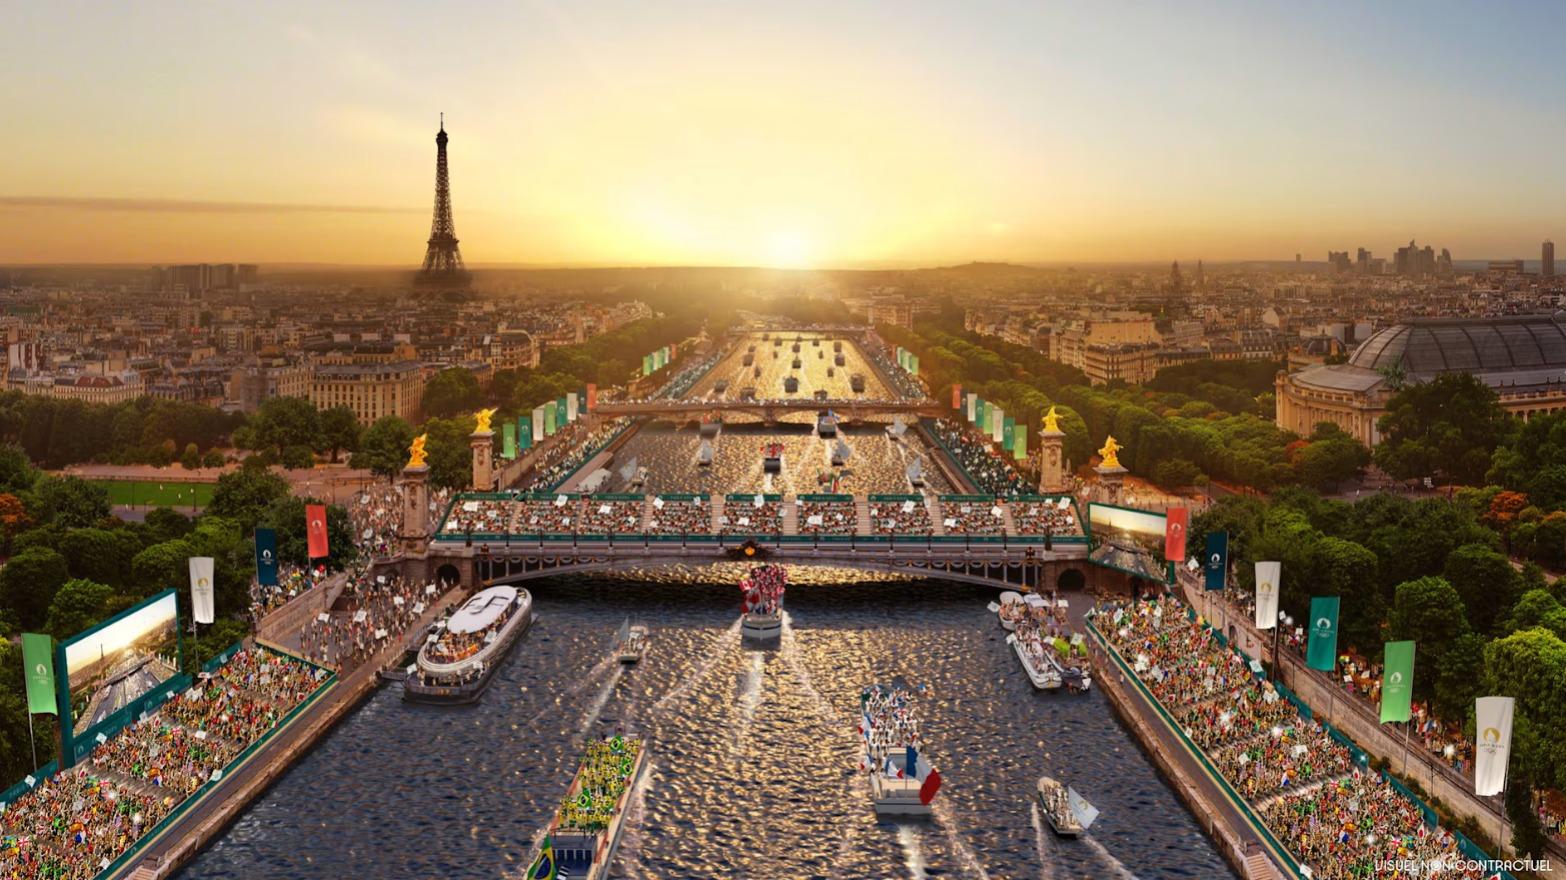 Bukan di Stadion, Upacara Pembukaan Olimpiade Paris 2024 Digelar di Tepi Sungai